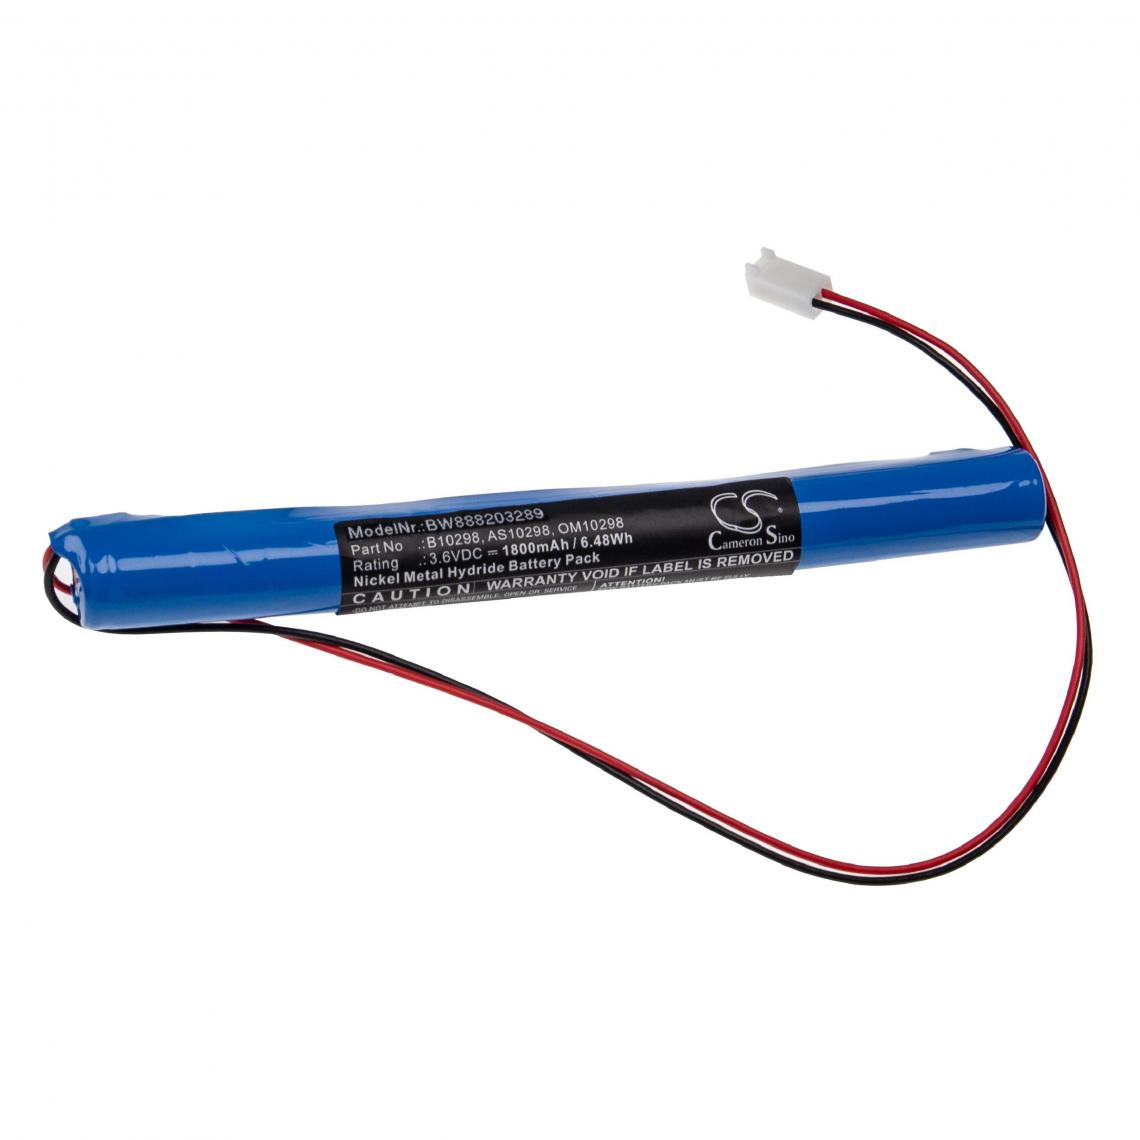 Vhbw - vhbw Batterie compatible avec Philips ECG (électrocardiographie) 4745, 4750, 4755, 4760 appareil médical (1800mAh, 3,6V, NiMH) - Piles spécifiques